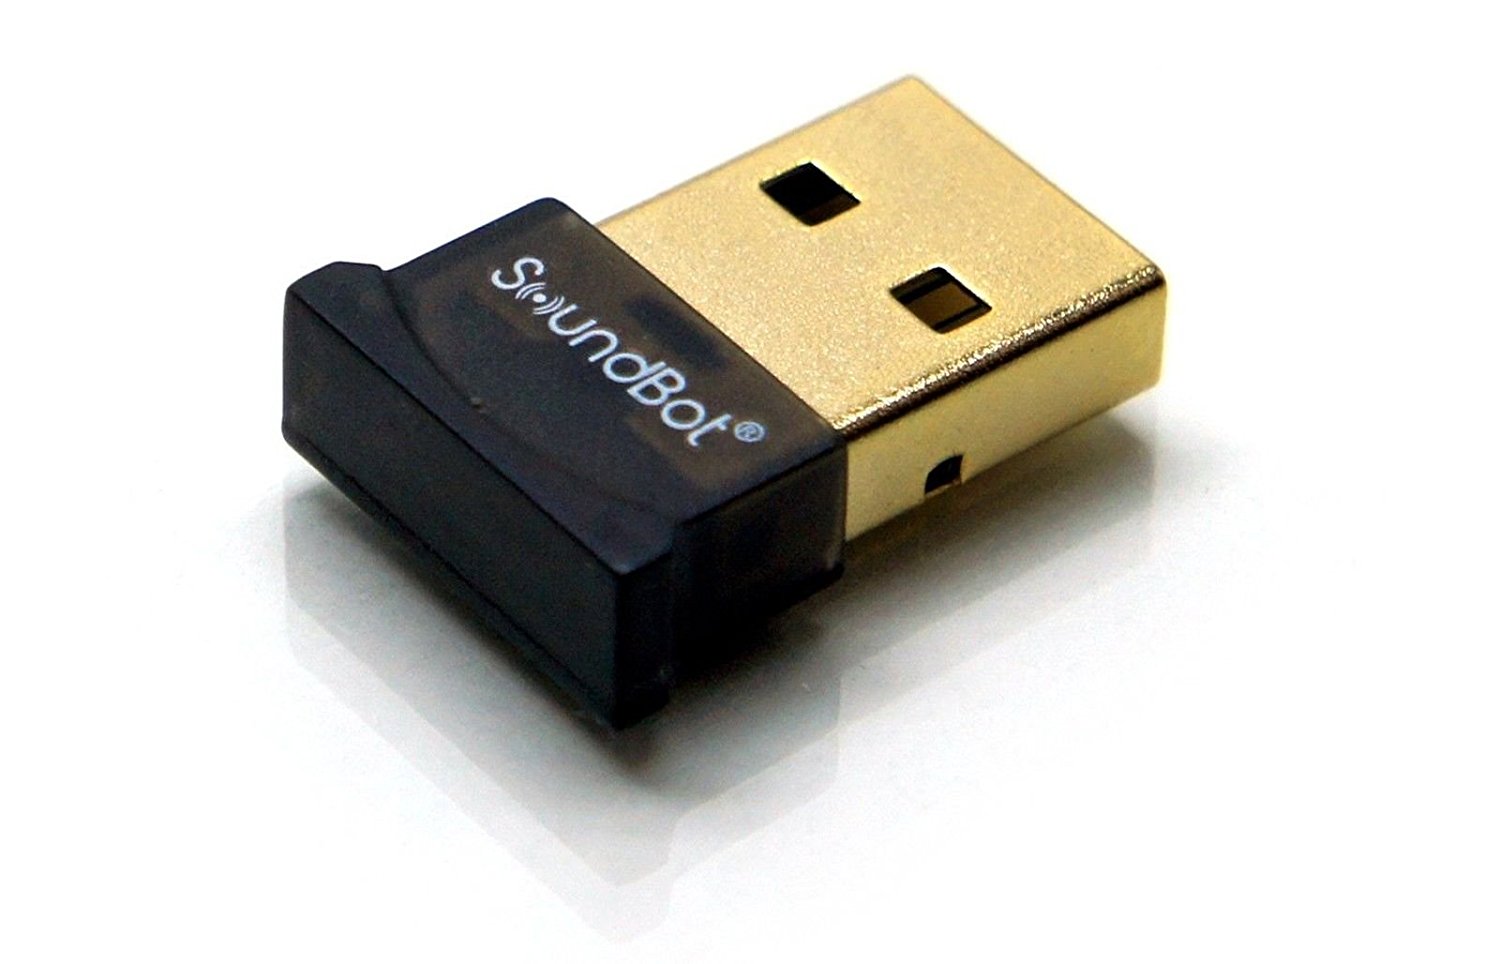 SOUNDBOAT SB340 UNIVERSAL PLUG AND PLAY ADAPTADOR USB BLUETOOTH 4.0